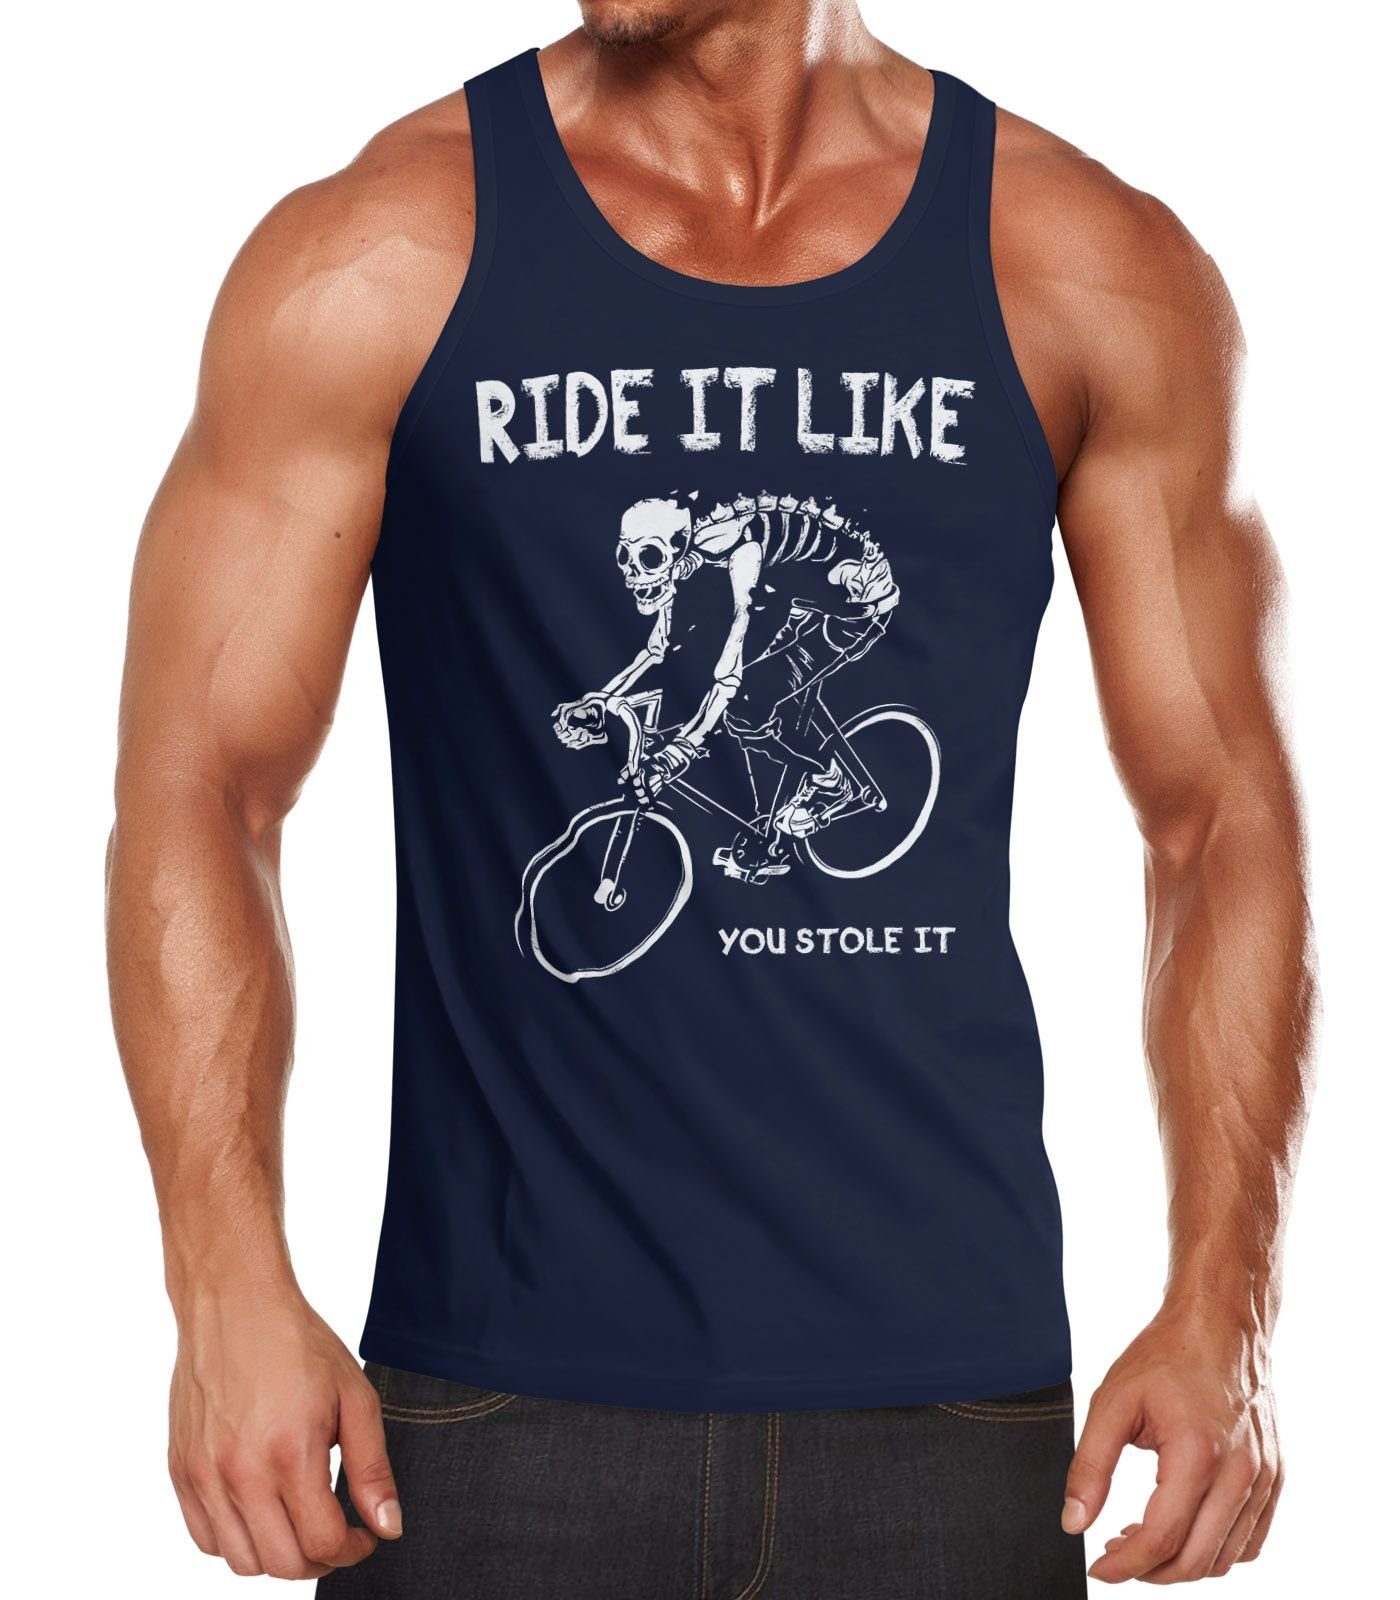 Print Tanktop Moonworks® it like Herren Rennrad Tanktop Ride navy Bike MoonWorks you it Fahrrad stole mit